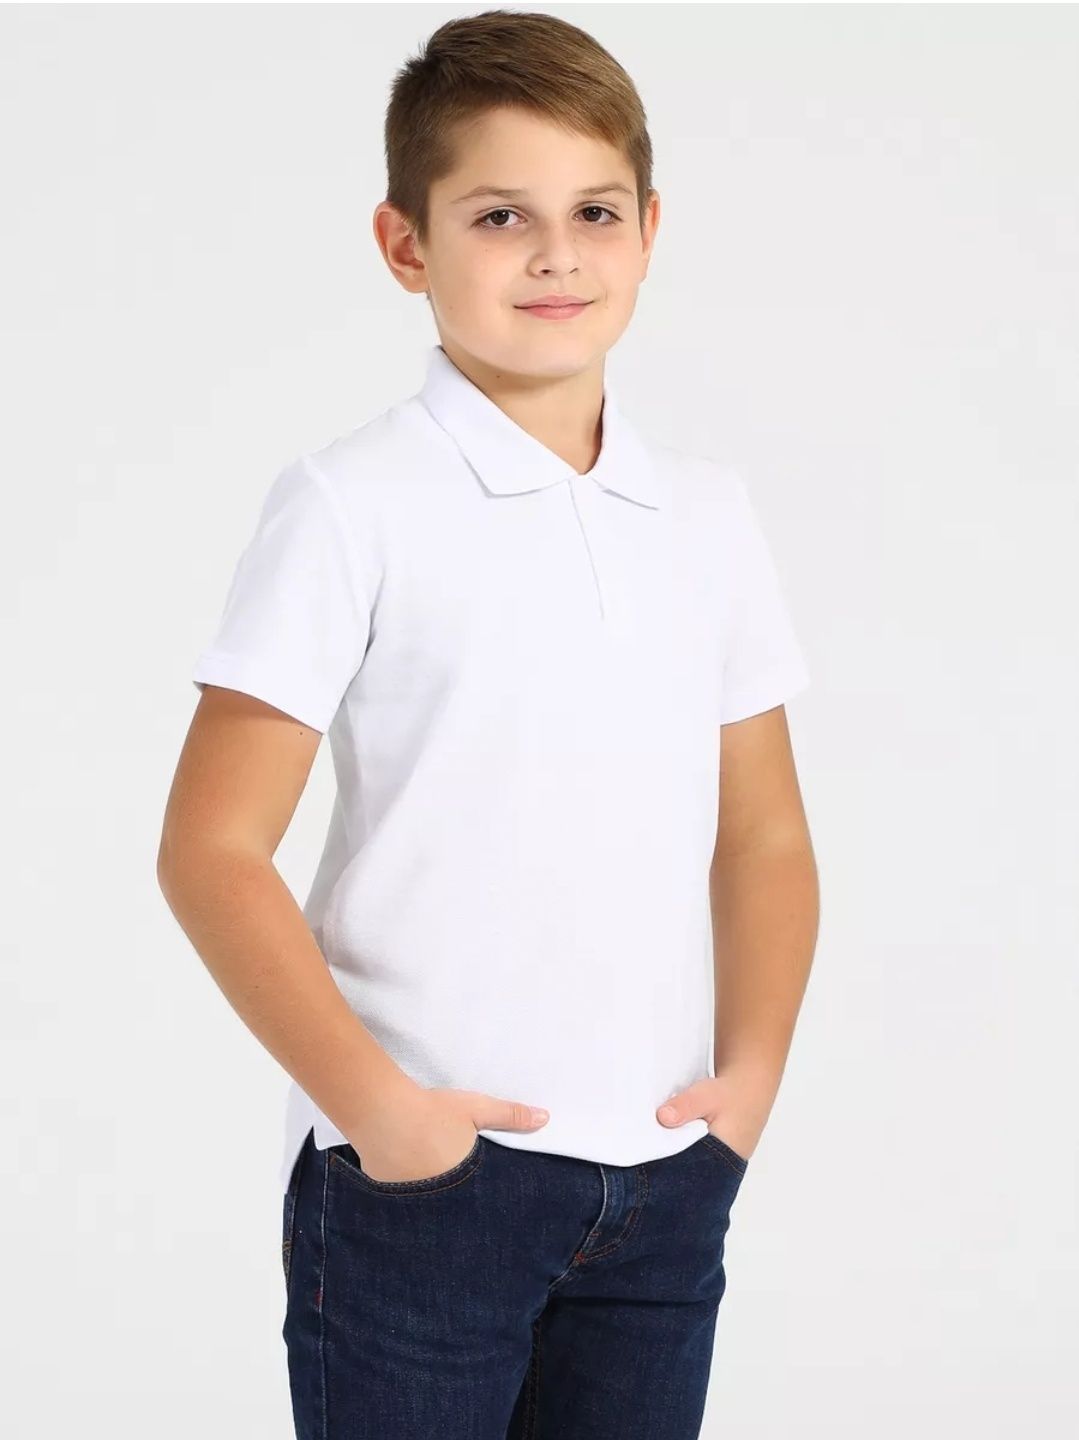 Белая футболка поло для мальчика